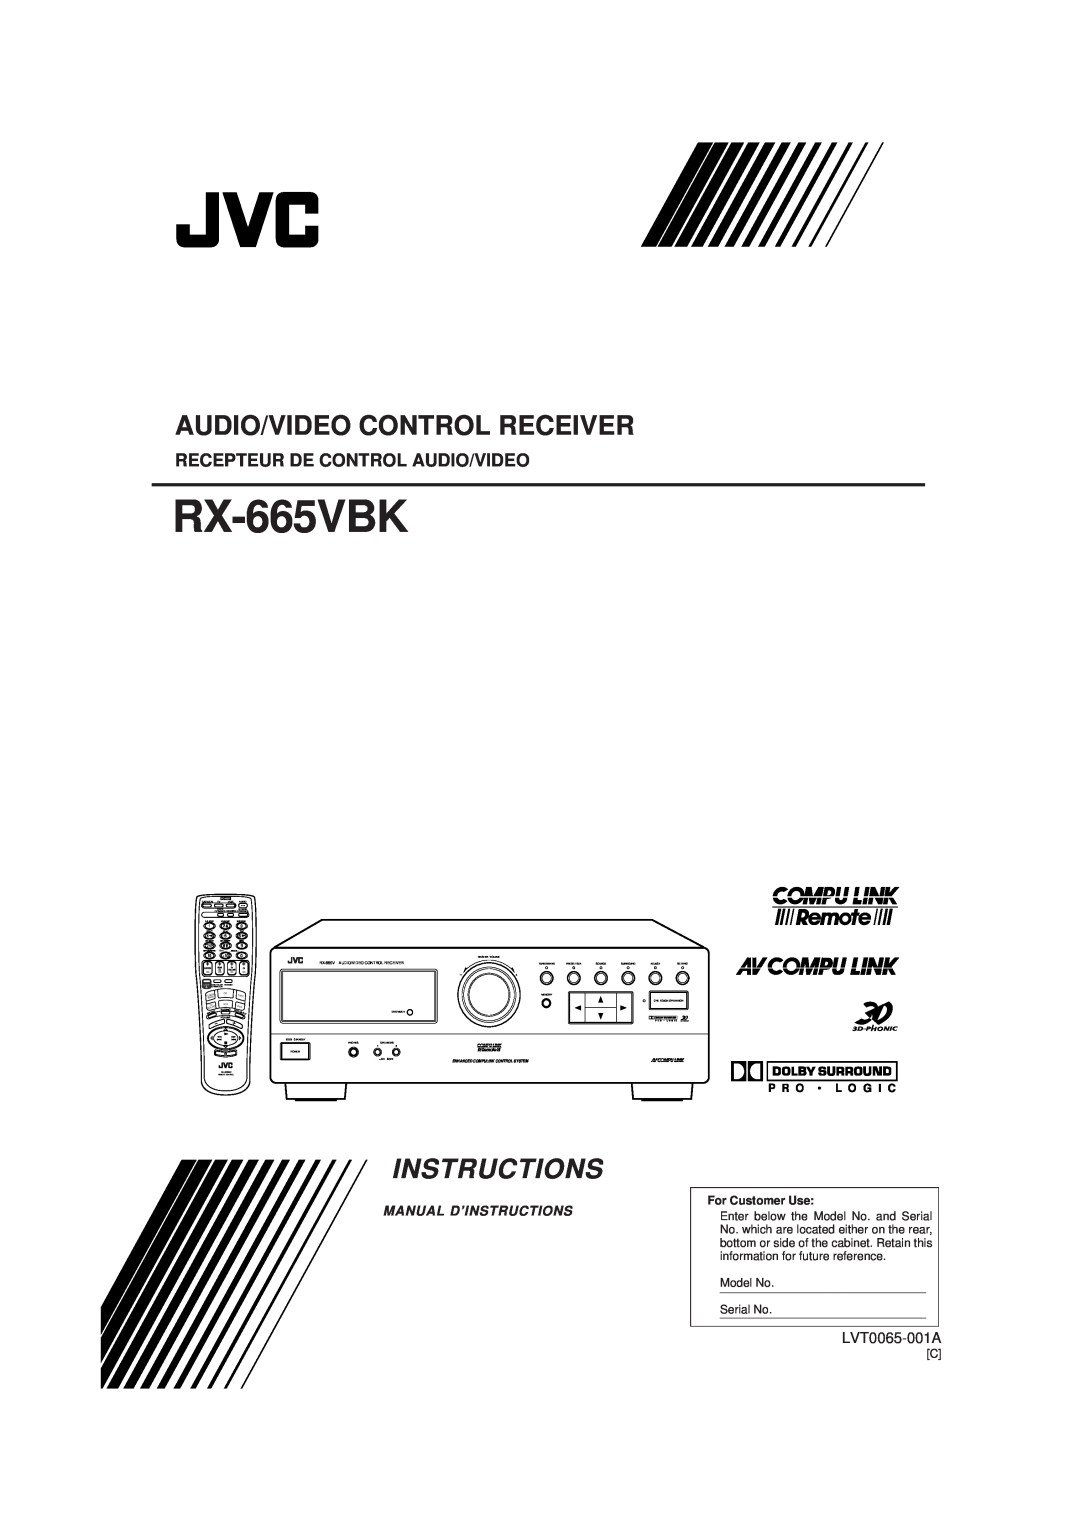 JVC RX-665VBK manual Audio/Video Control Receiver, Recepteur De Control Audio/Video, Instructions, LVT0065-001A 